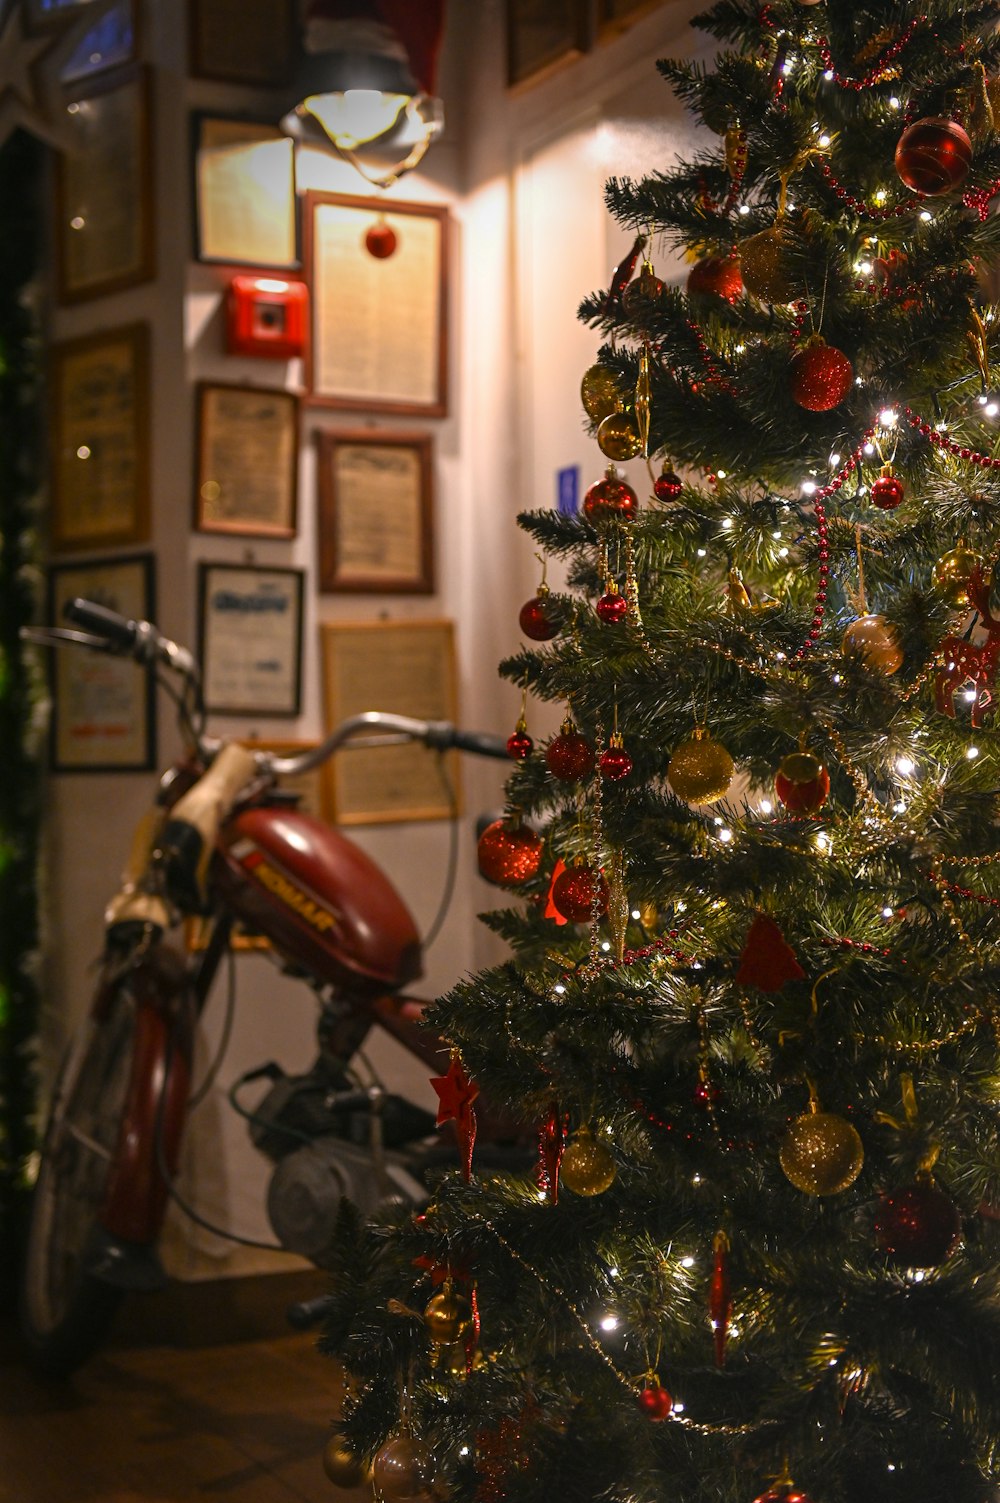 Una motocicletta parcheggiata accanto a un albero di Natale